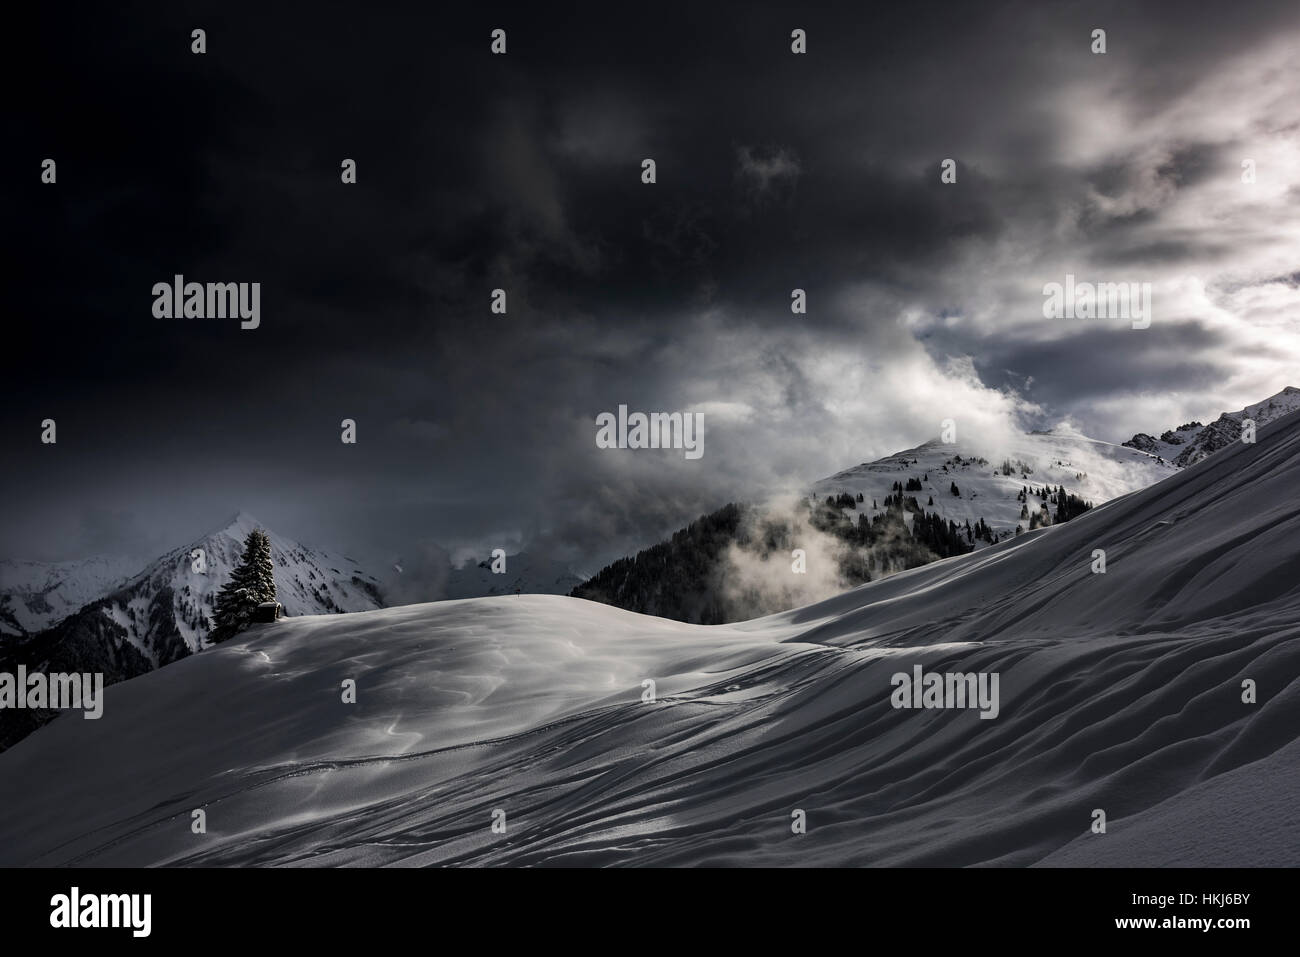 Montagna Innevata del paesaggio, luce drammatica con nuvole scure, Hittisau, Foresta di Bregenz, Vorarlberg, Austria Foto Stock